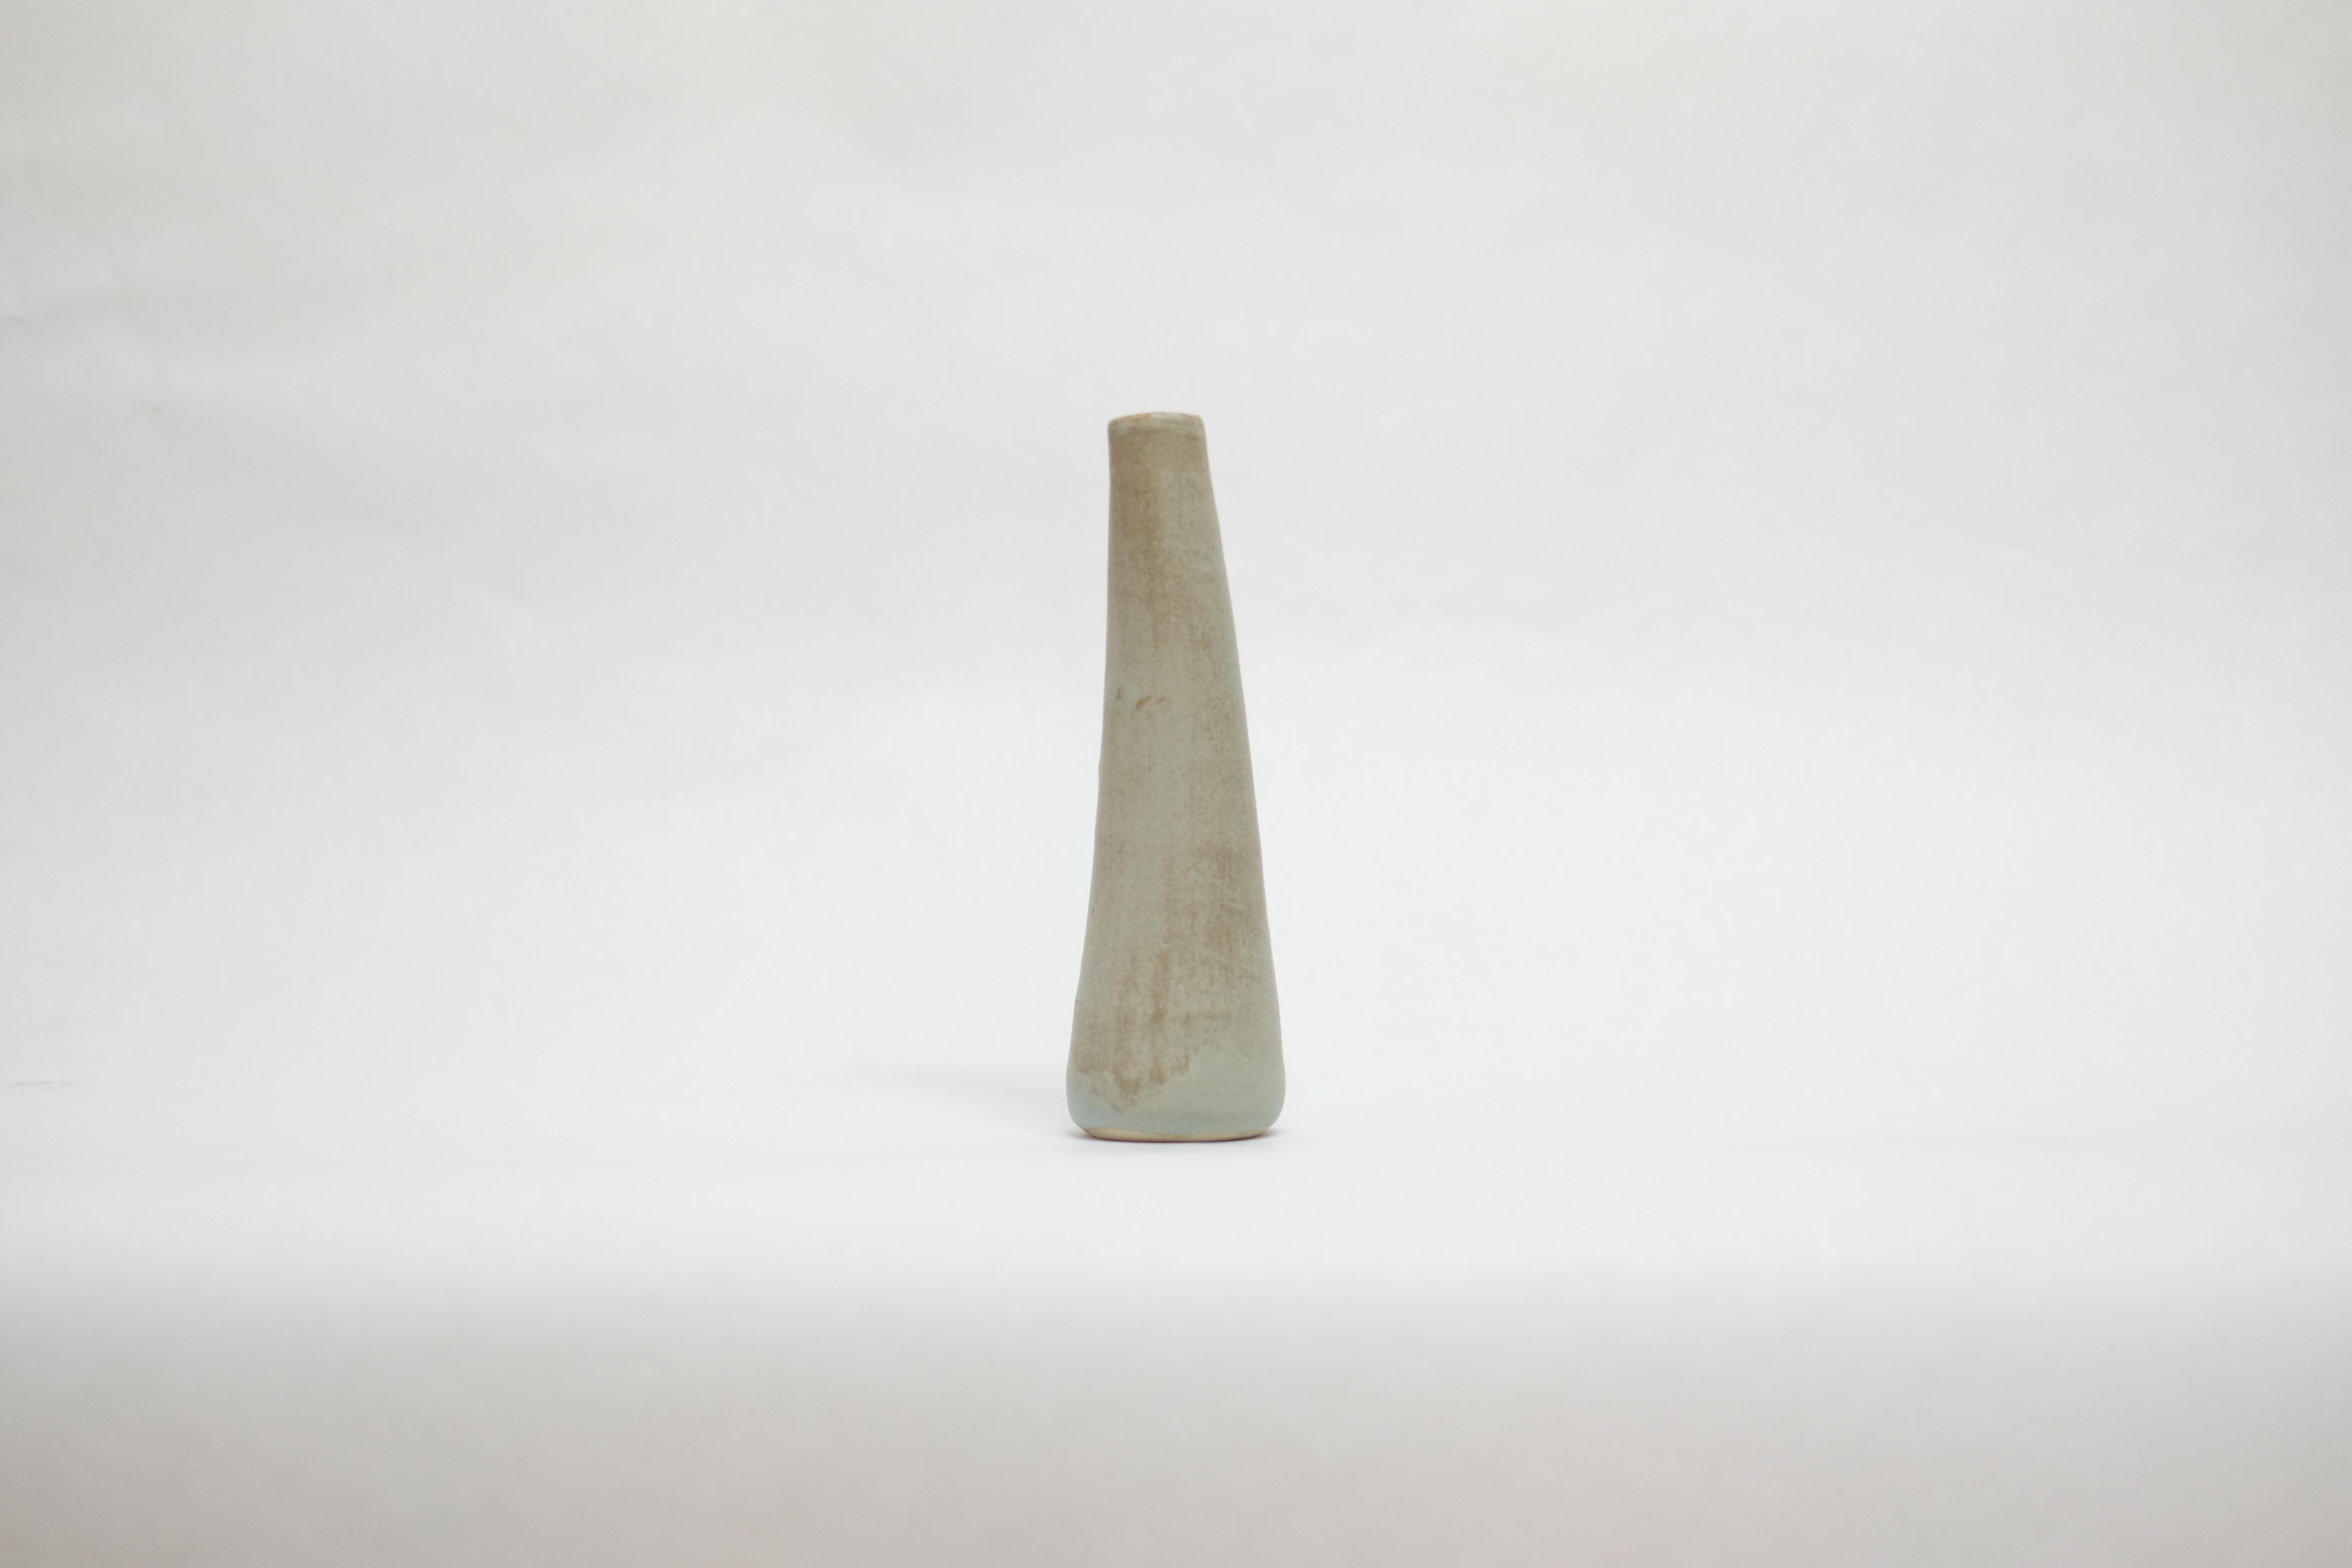 Solitario-Vase aus Steingut von Camila Apaez
Einzigartig
MATERIALIEN: Steingut
Abmessungen: 7 X 7 X 19 cm
Optionen: White Bone, Stone Sage, Artischockengrün (solange der Vorrat reicht), Buttermilch, bitte kontaktieren Sie uns.

Dieses Jahr war